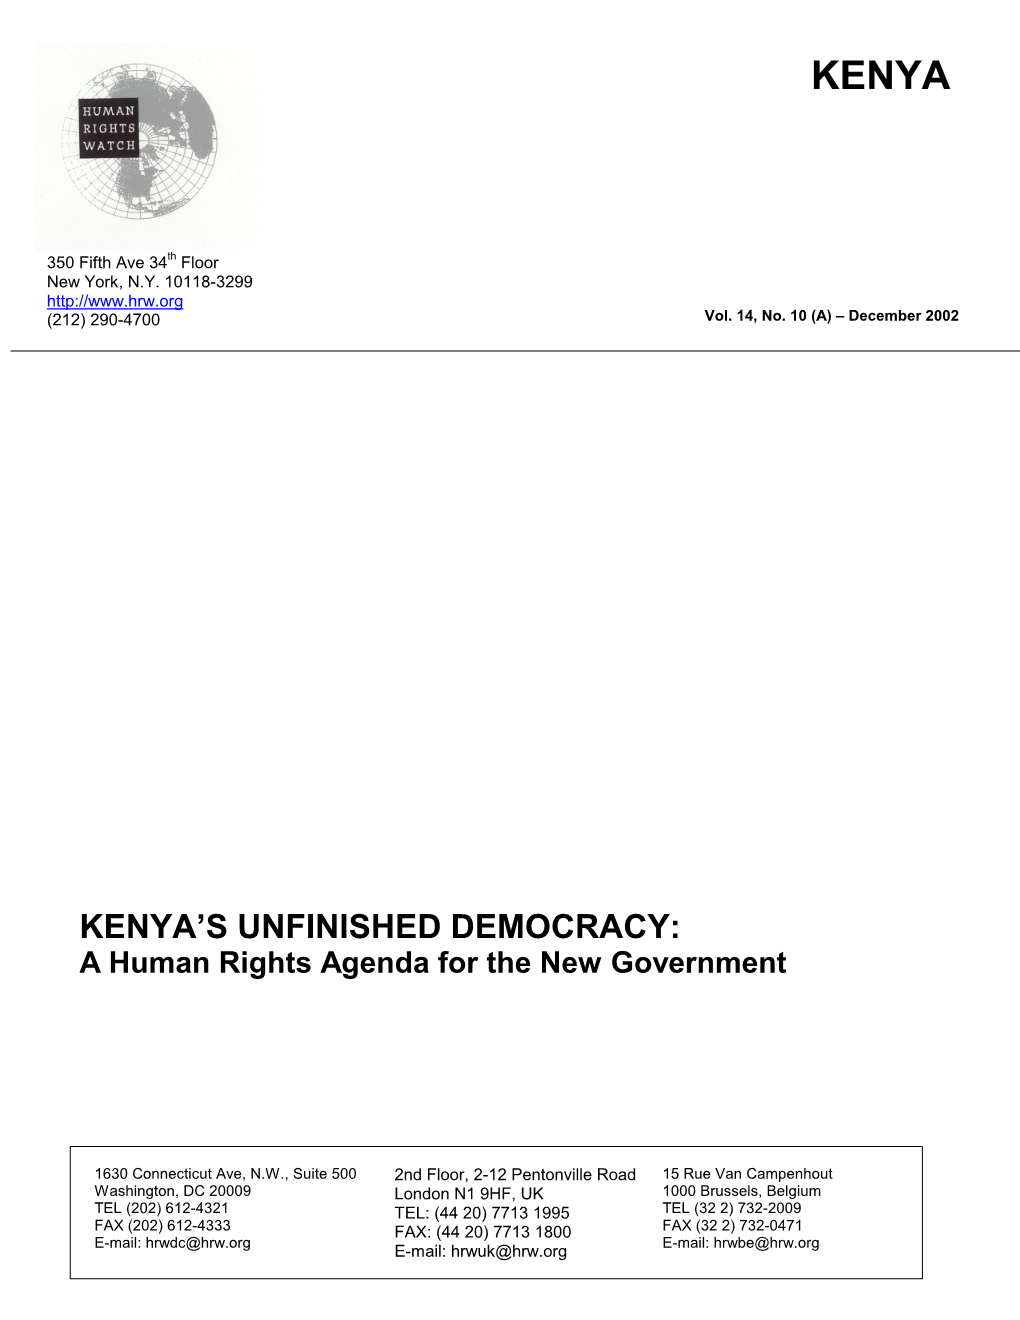 Kenya's Unfinished Democracy